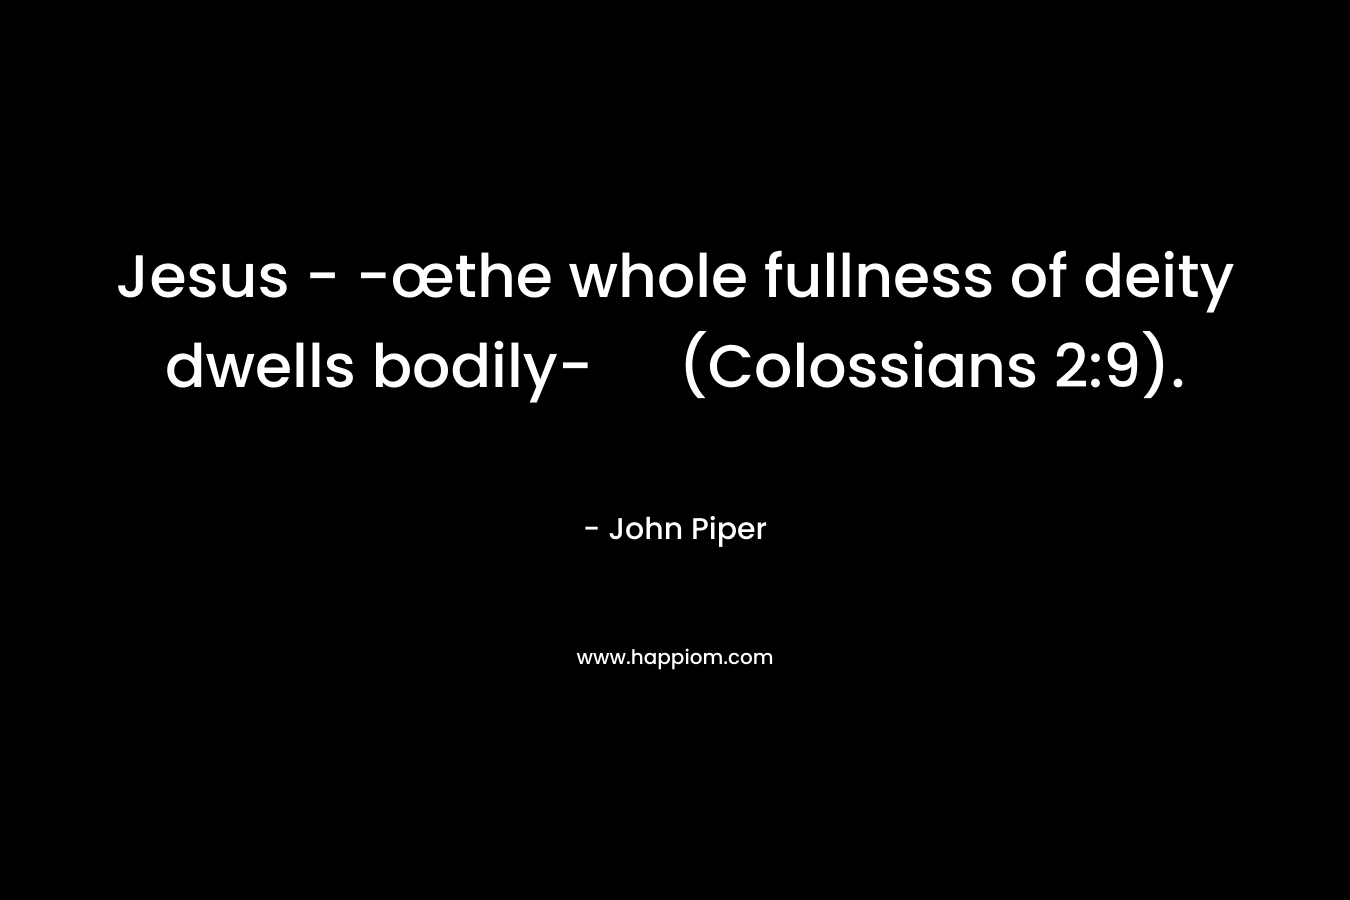 Jesus - -œthe whole fullness of deity dwells bodily- (Colossians 2:9).